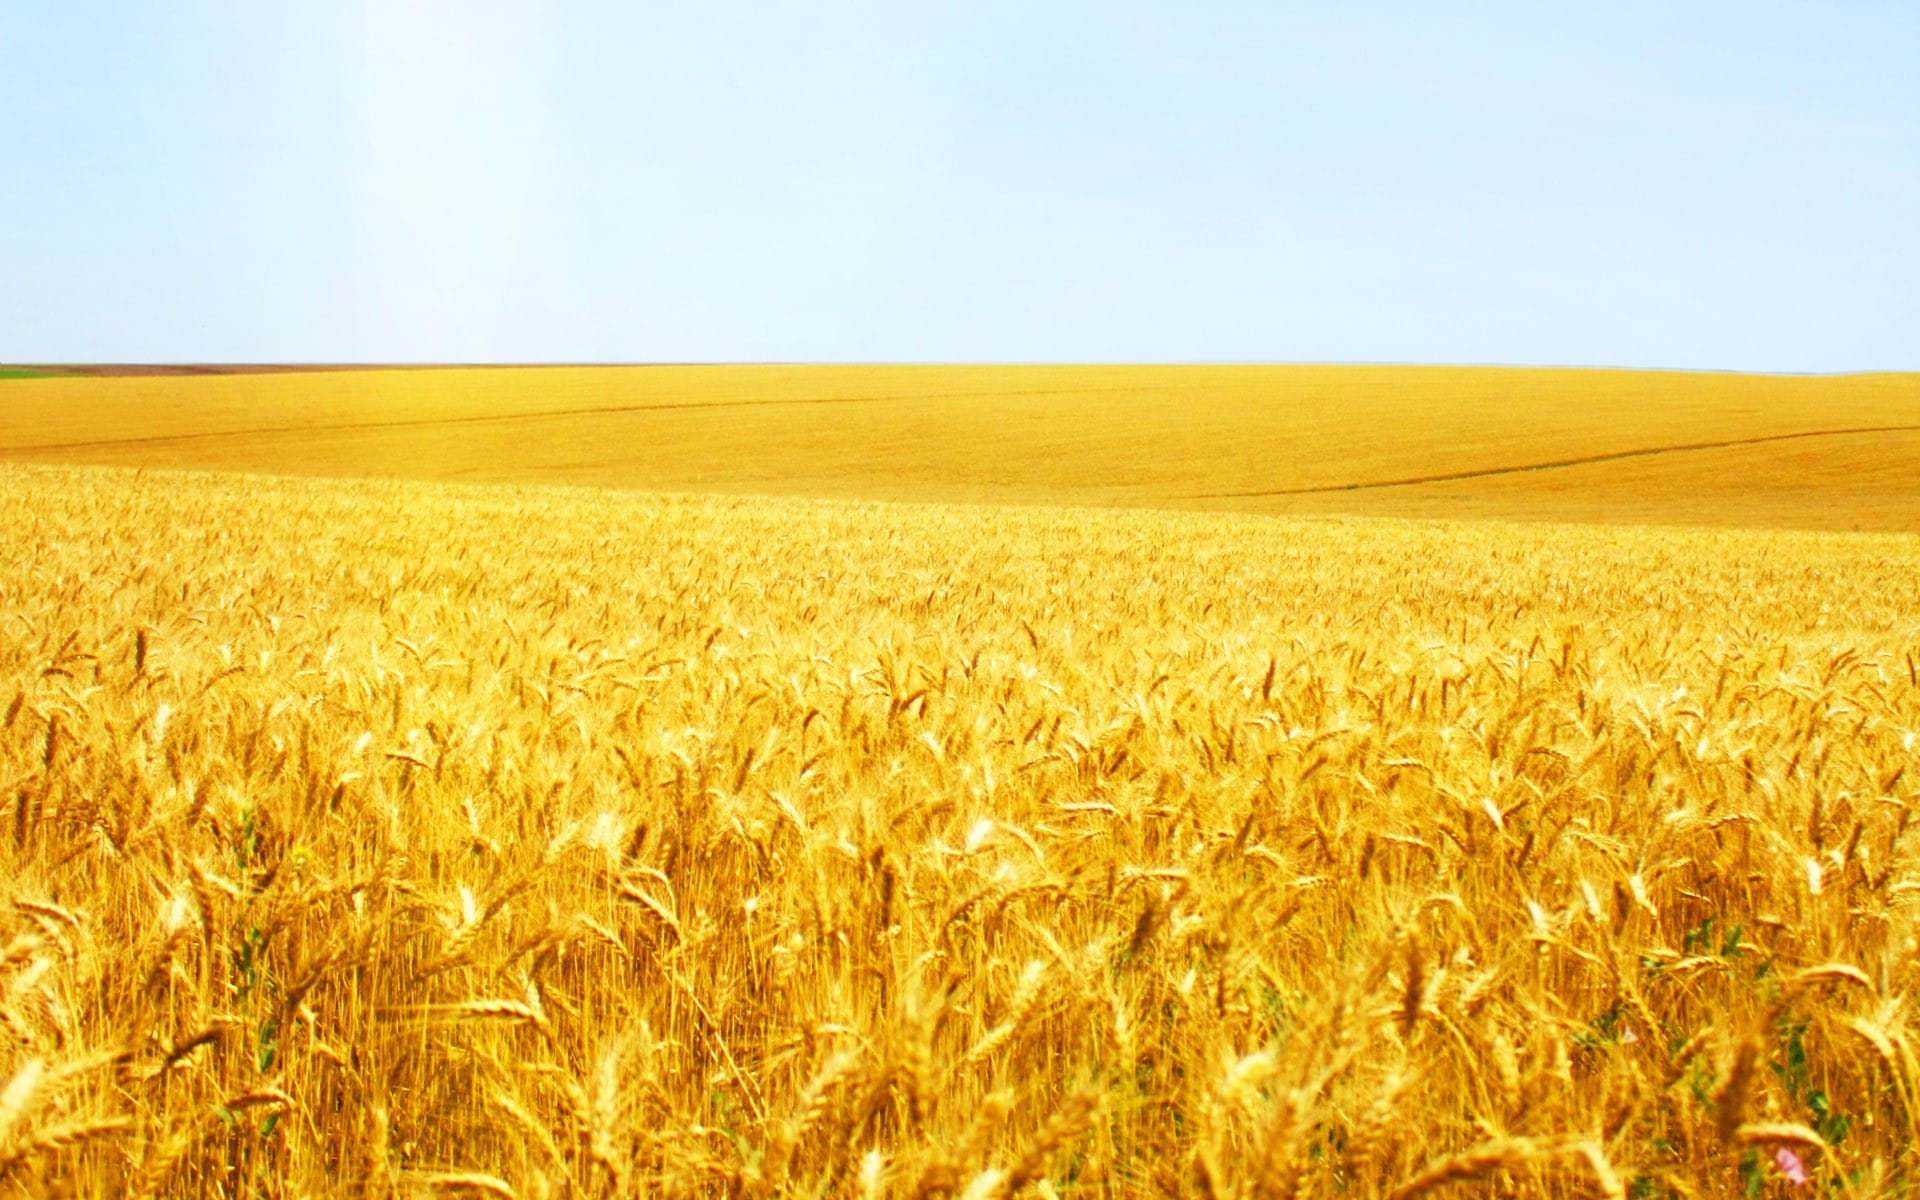 金黄色的麦田唯美风景图片壁纸